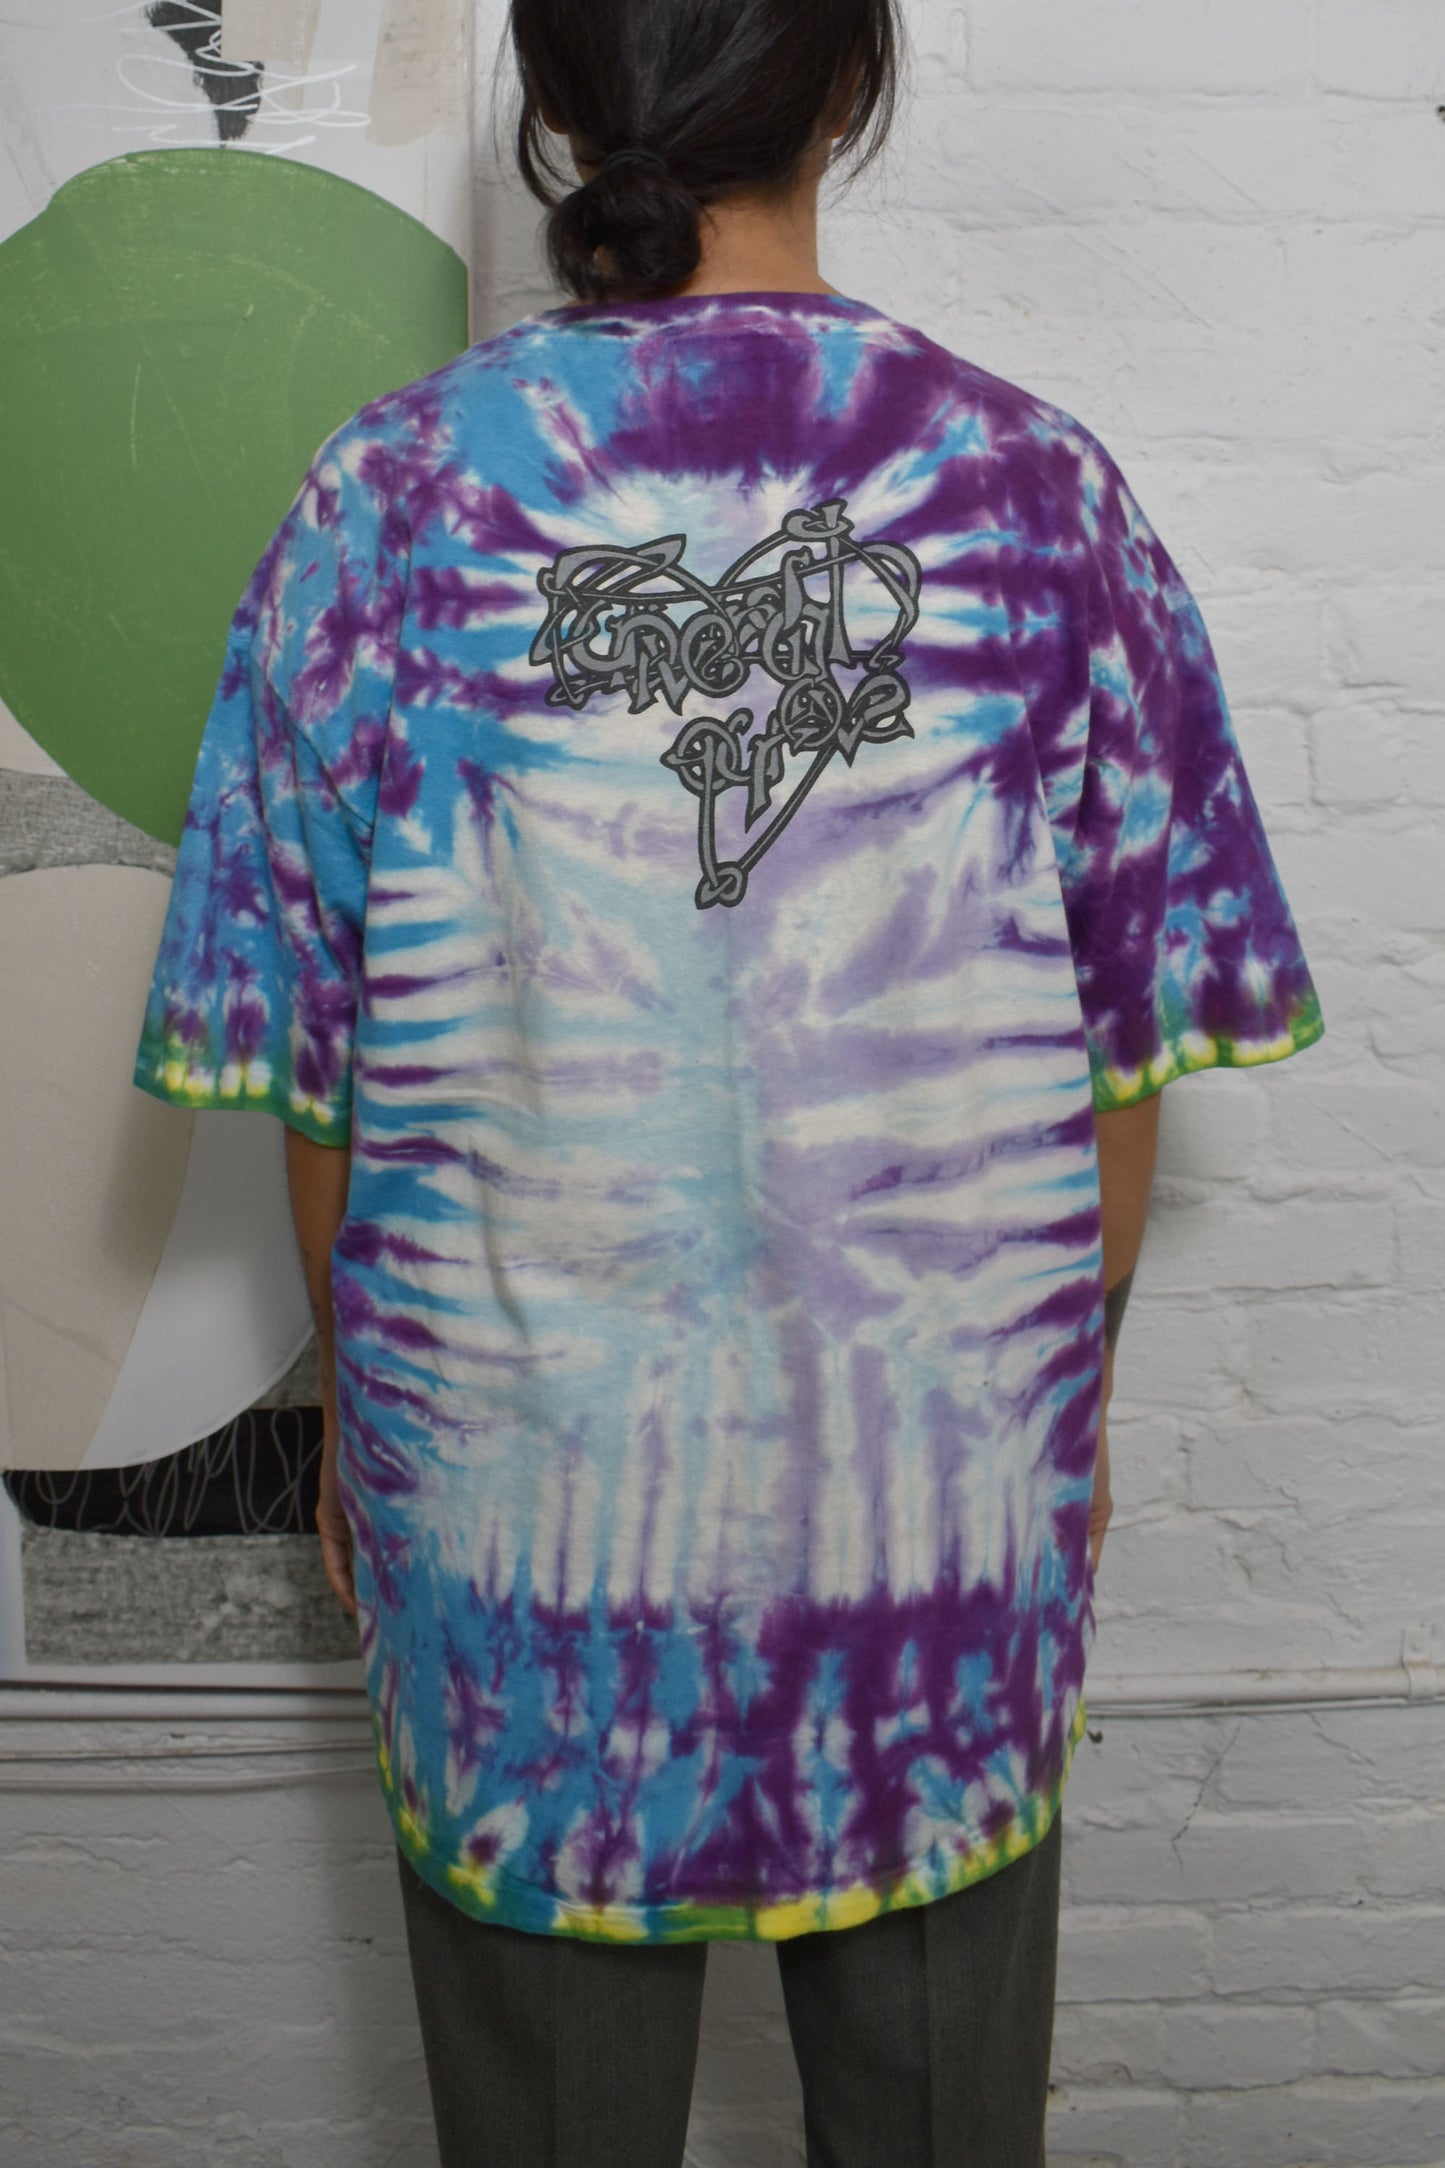 Vintage 1993 "Lenny Kravitz Universal Love Tour" Tie Dye T-Shirt